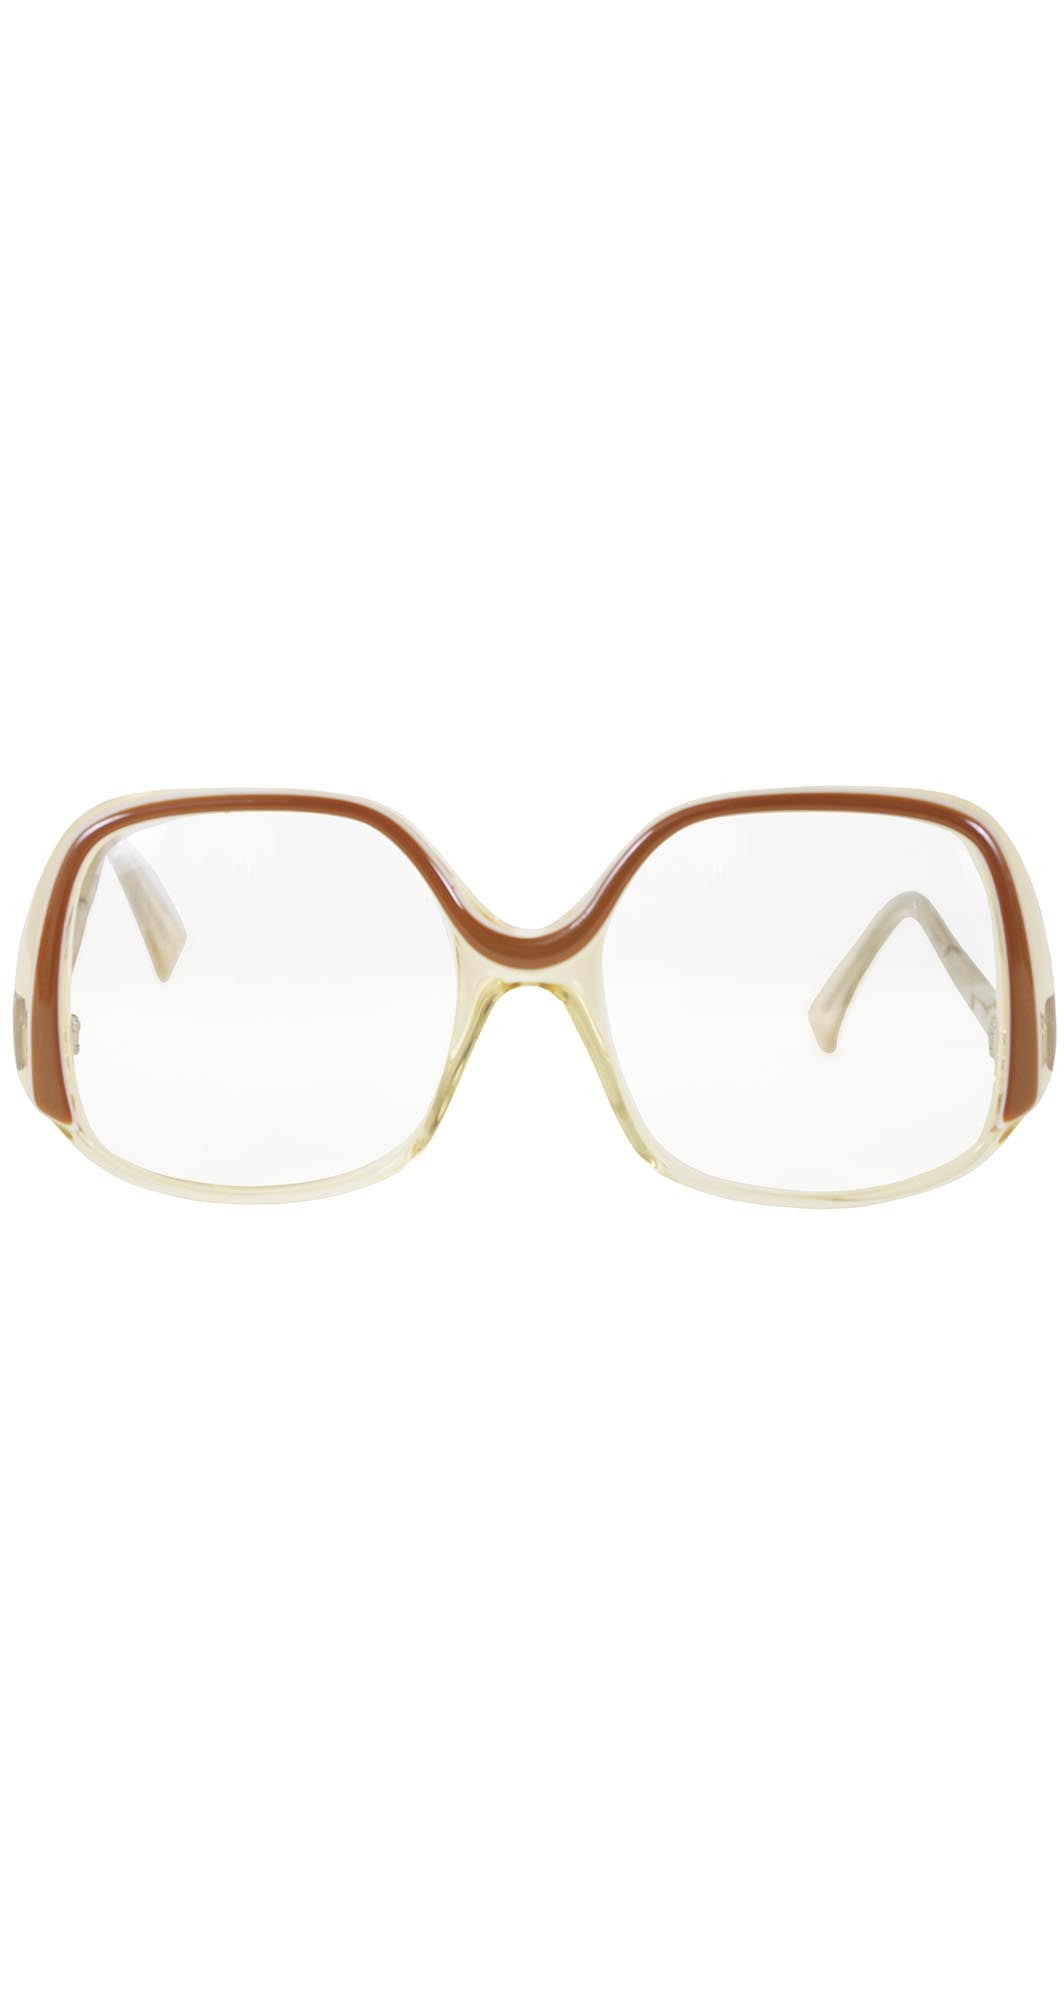 1970s French Oversized Eyeglasses Frames